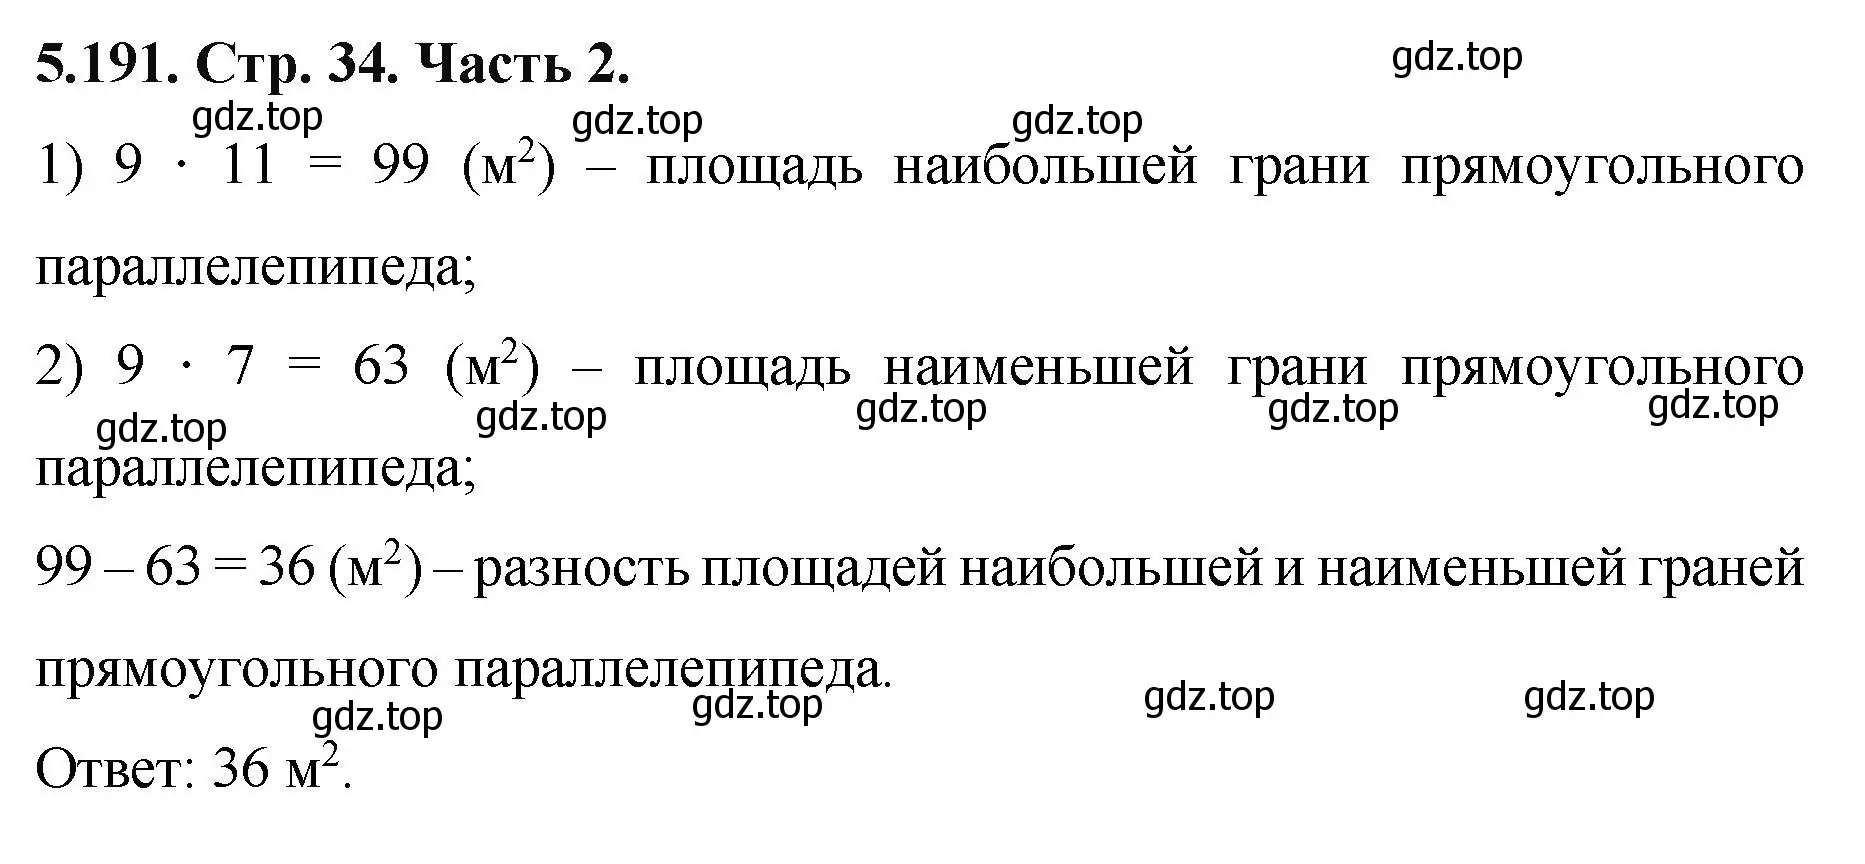 Решение номер 5.191 (страница 34) гдз по математике 5 класс Виленкин, Жохов, учебник 2 часть